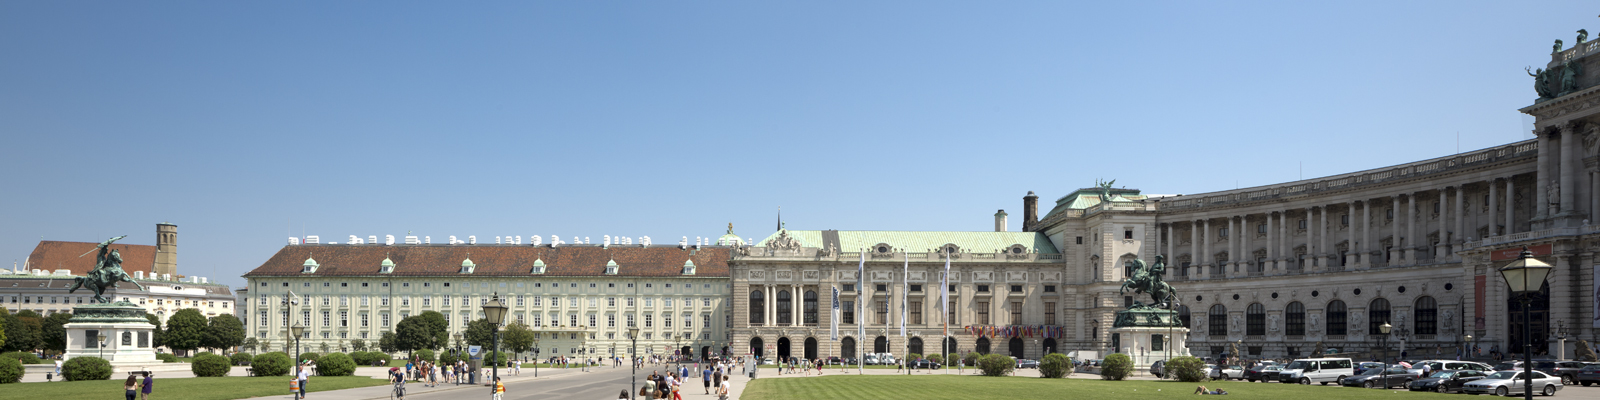 Zamek Hofburg, Wiedeń